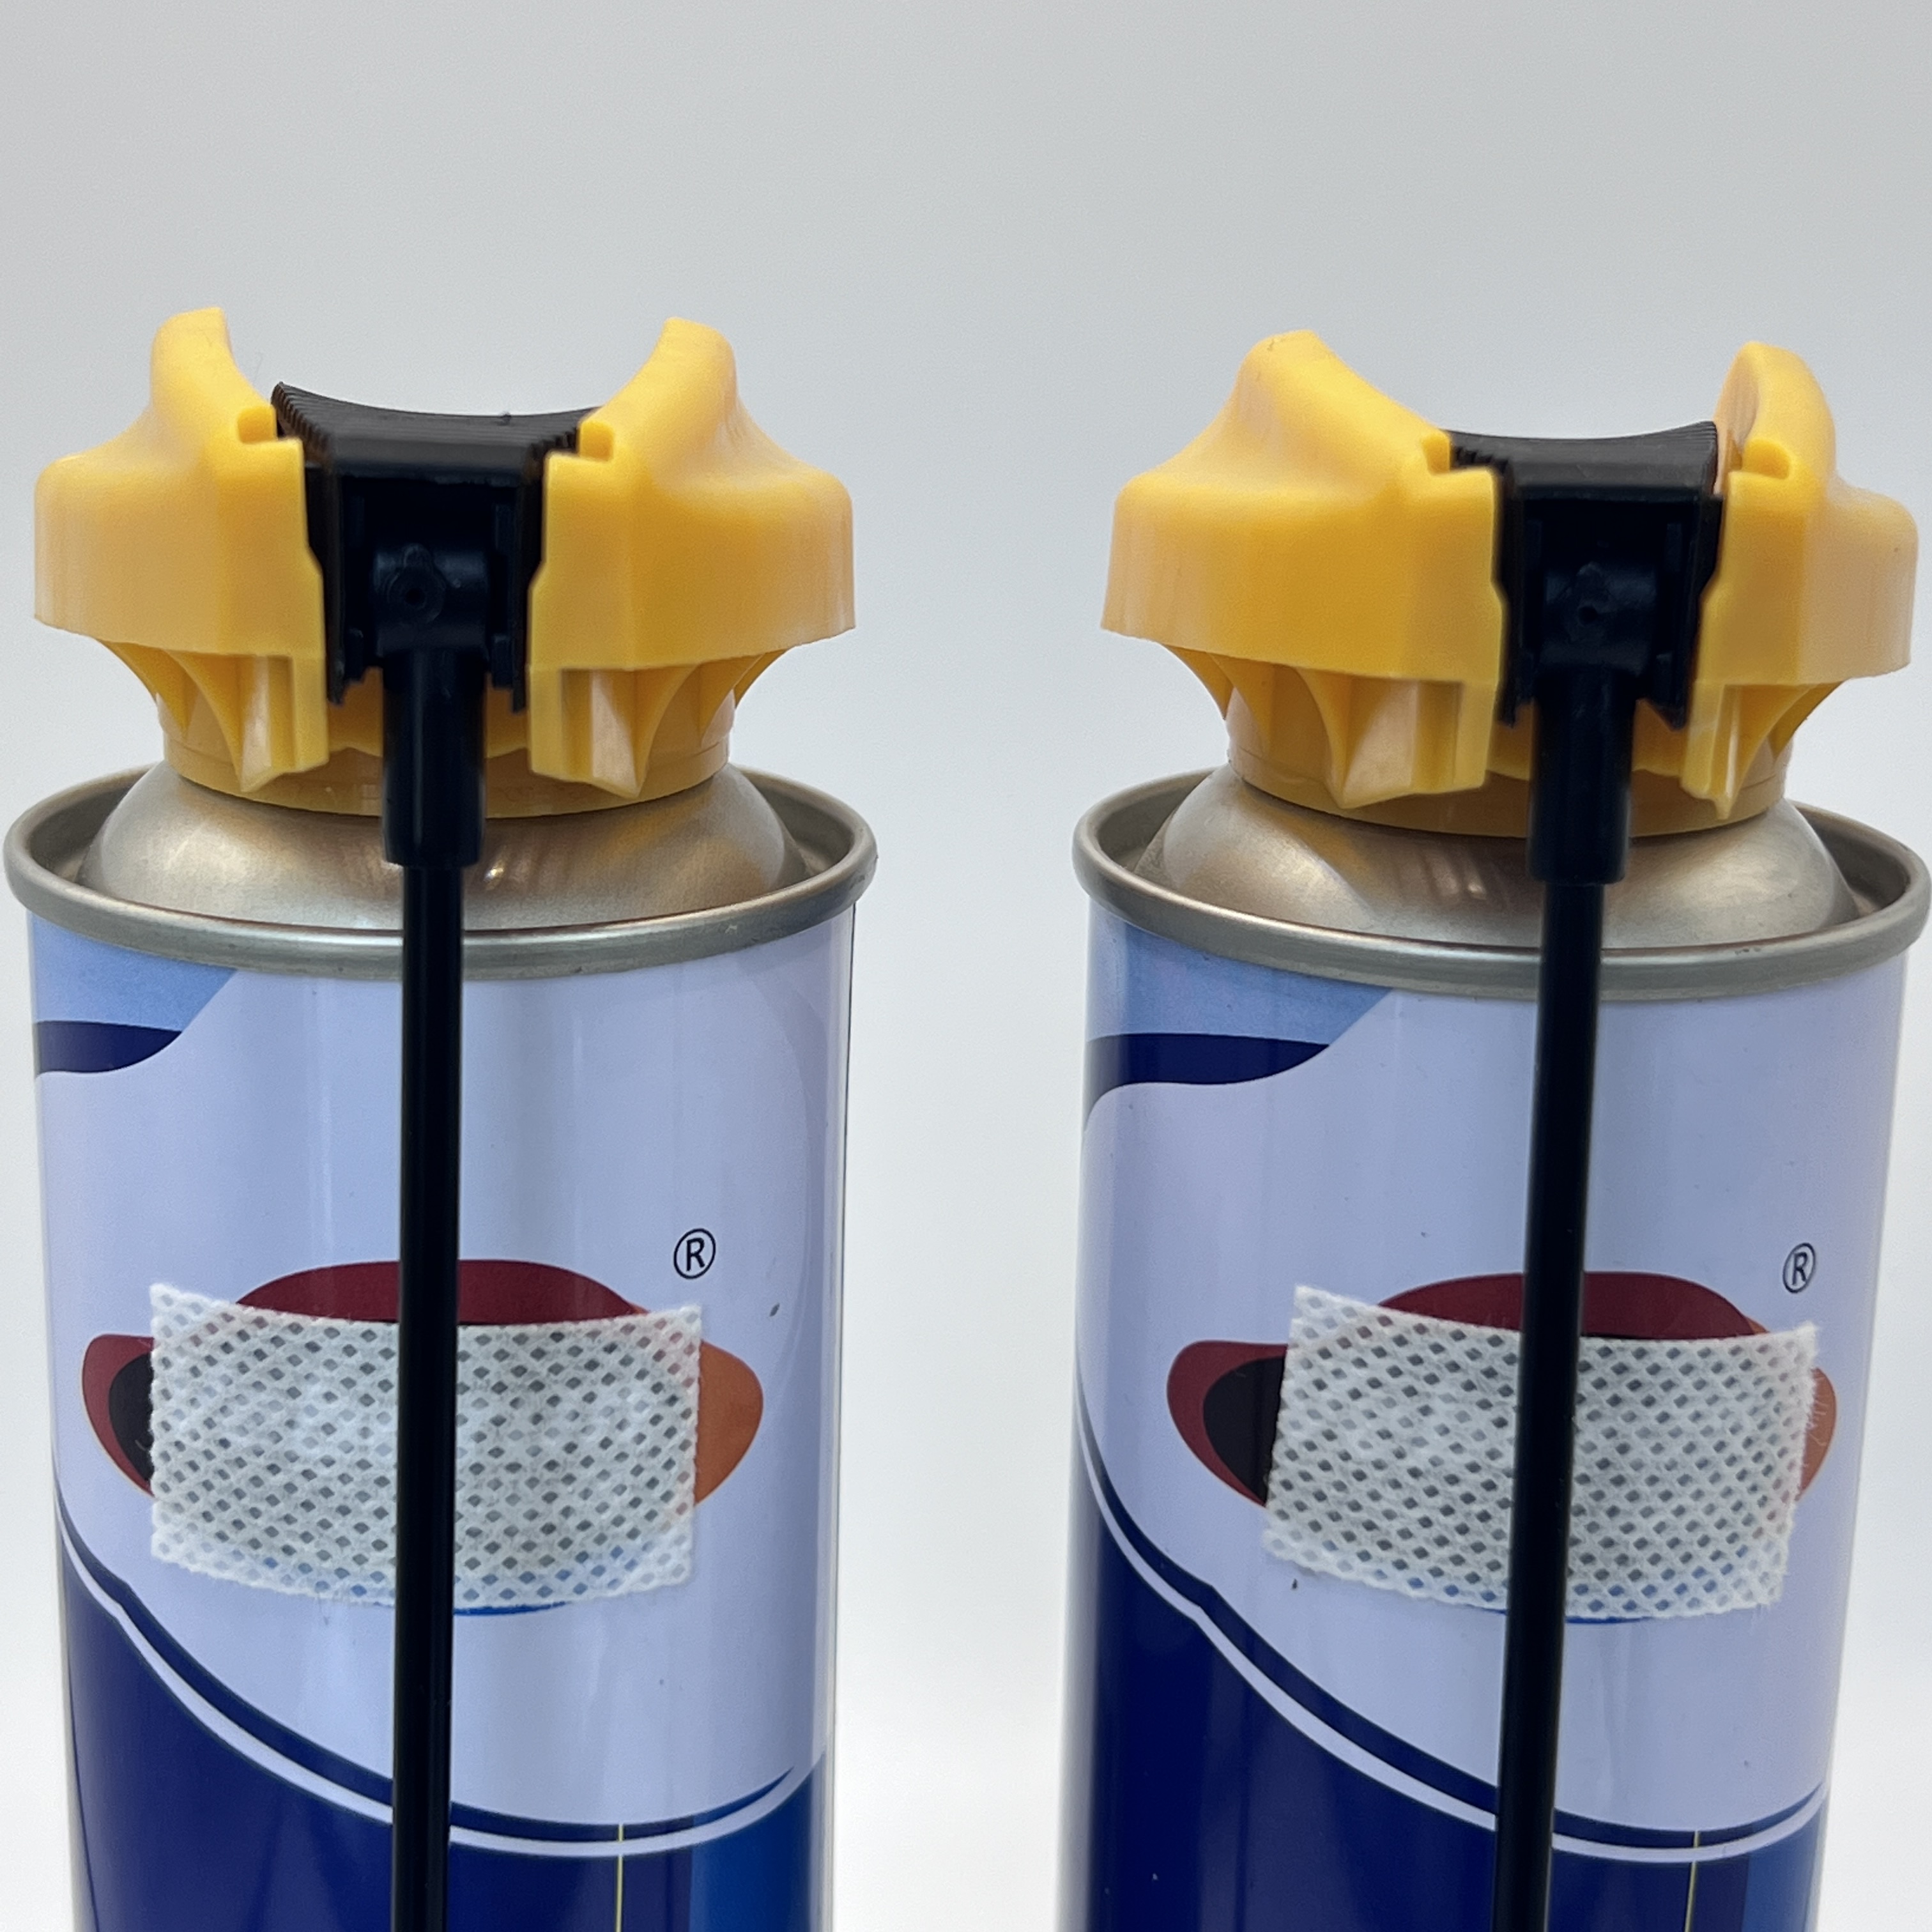 Válvula de pulverização de aerossol à prova de vazamento - solução confiável para projetos de bricolage